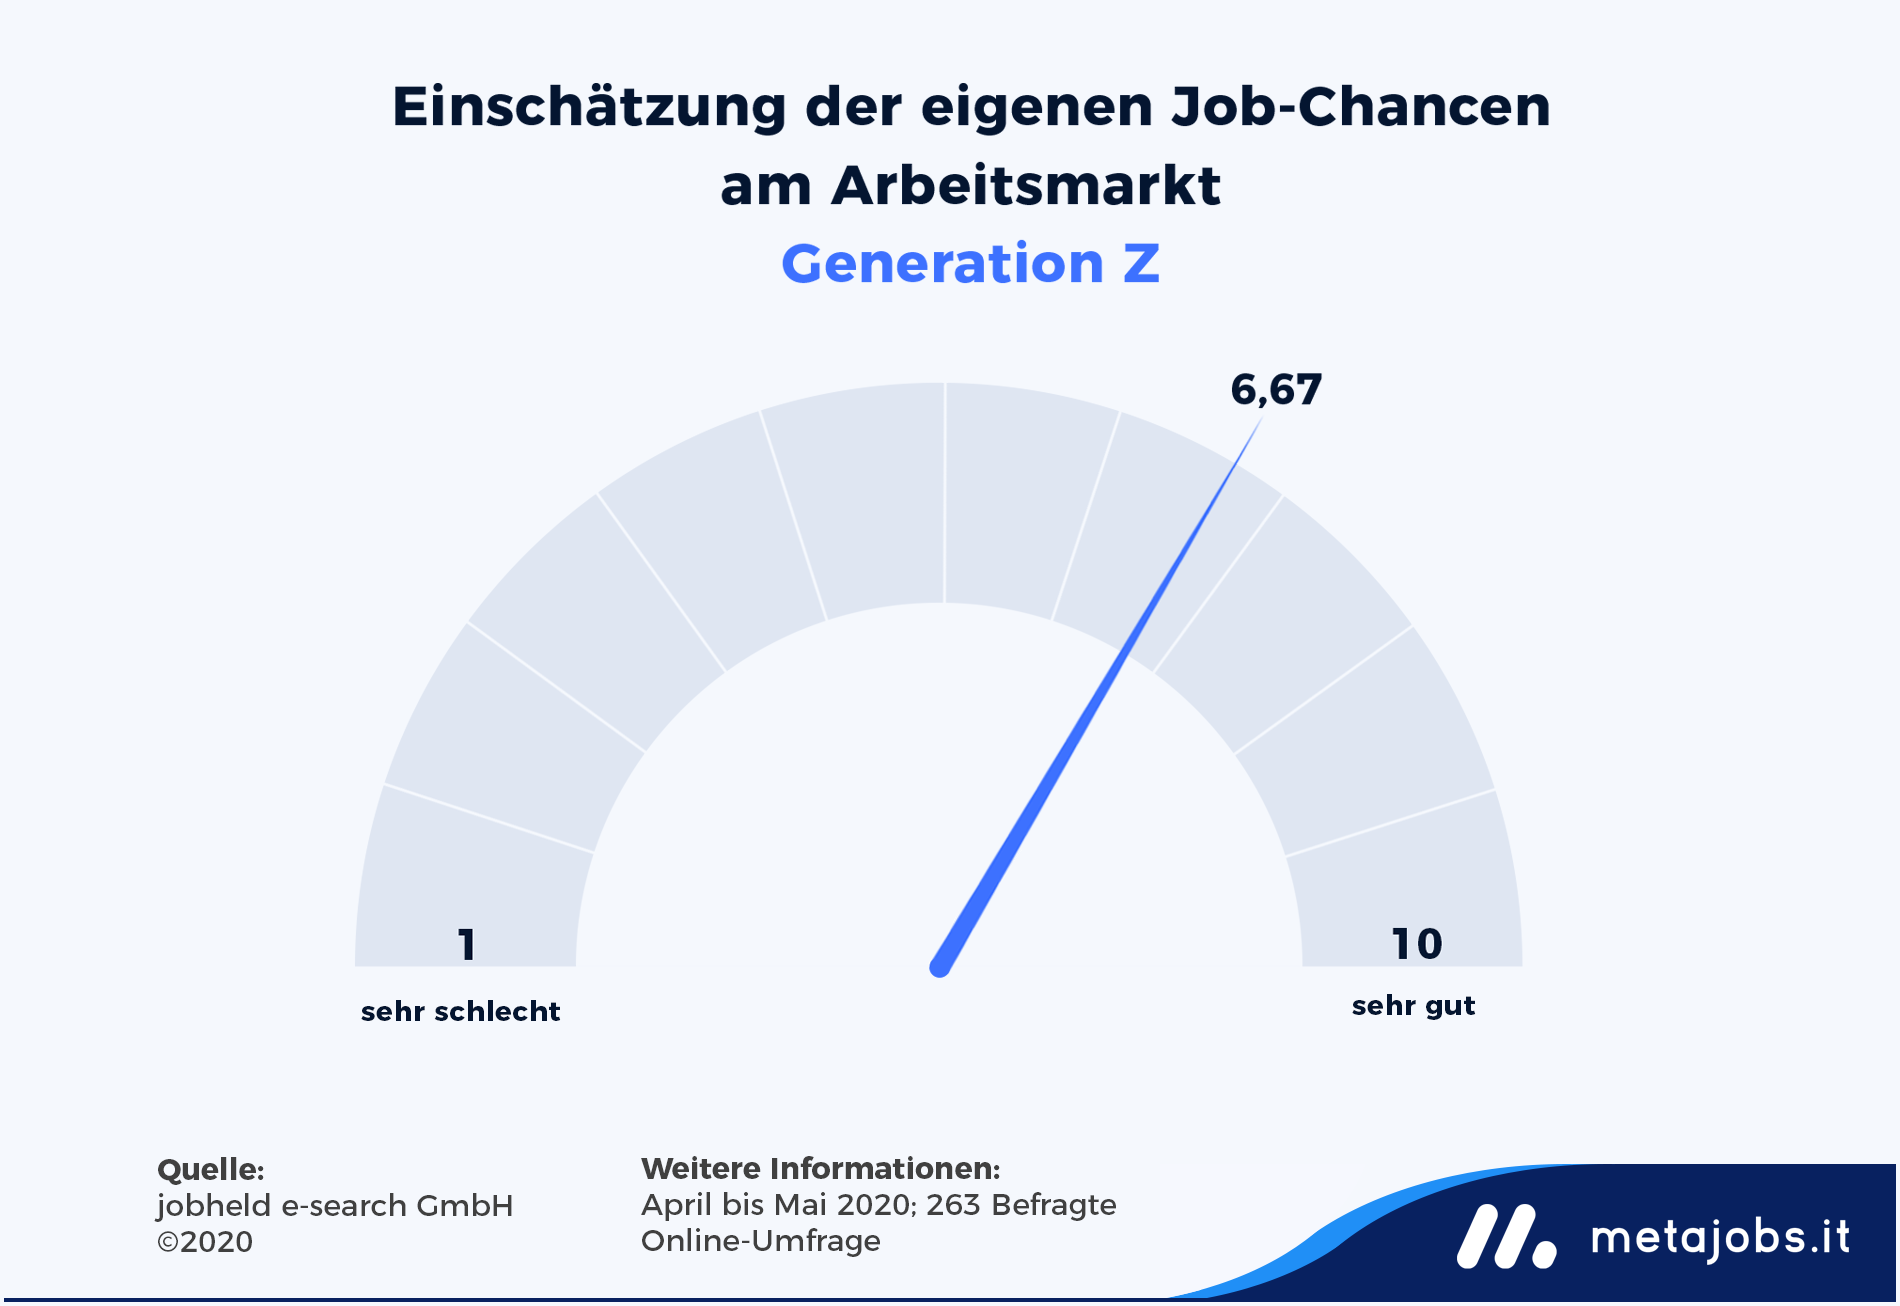 Einschätzung der eigenen Job-Chancen am Arbeitsmarkt in Südtirol Generation Z Infografik